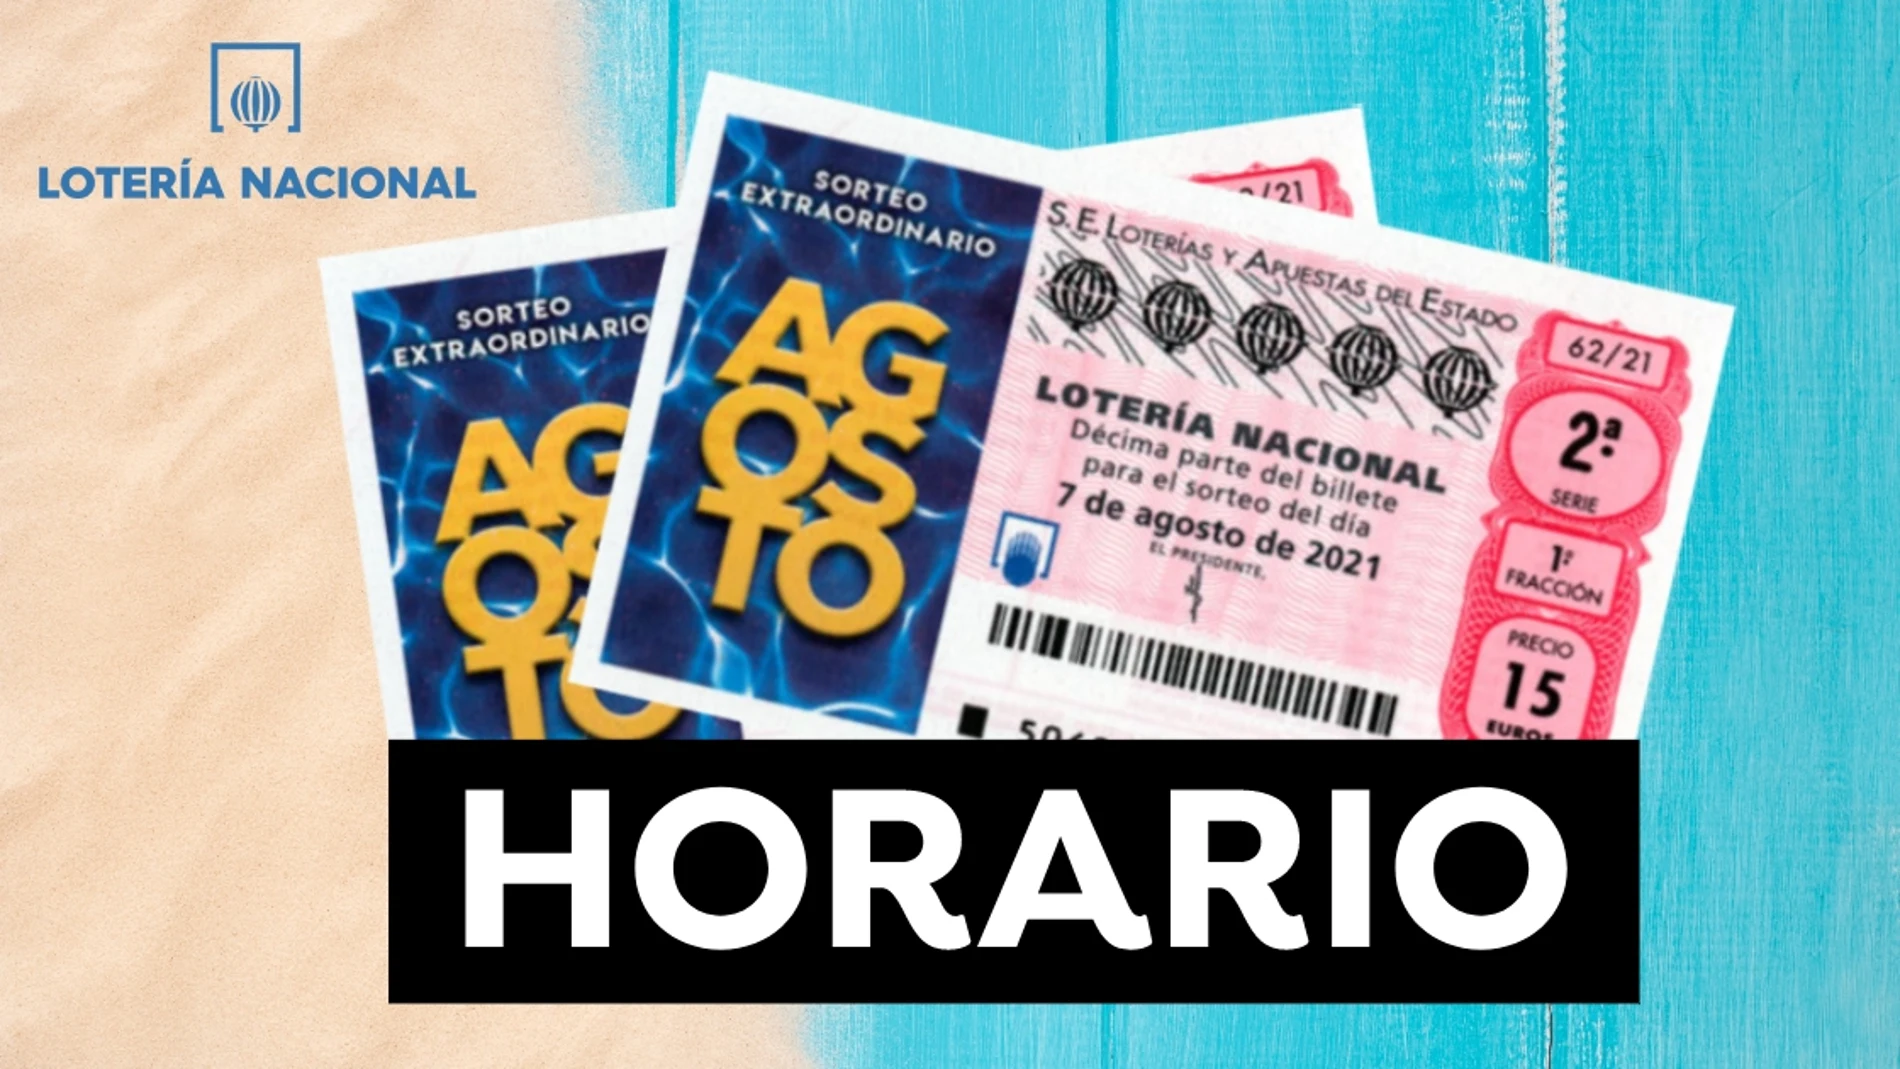 Lotería Nacional: Horario y dónde ver el Sorteo Extraordinario de Agosto 2021 del sábado 7 de agosto